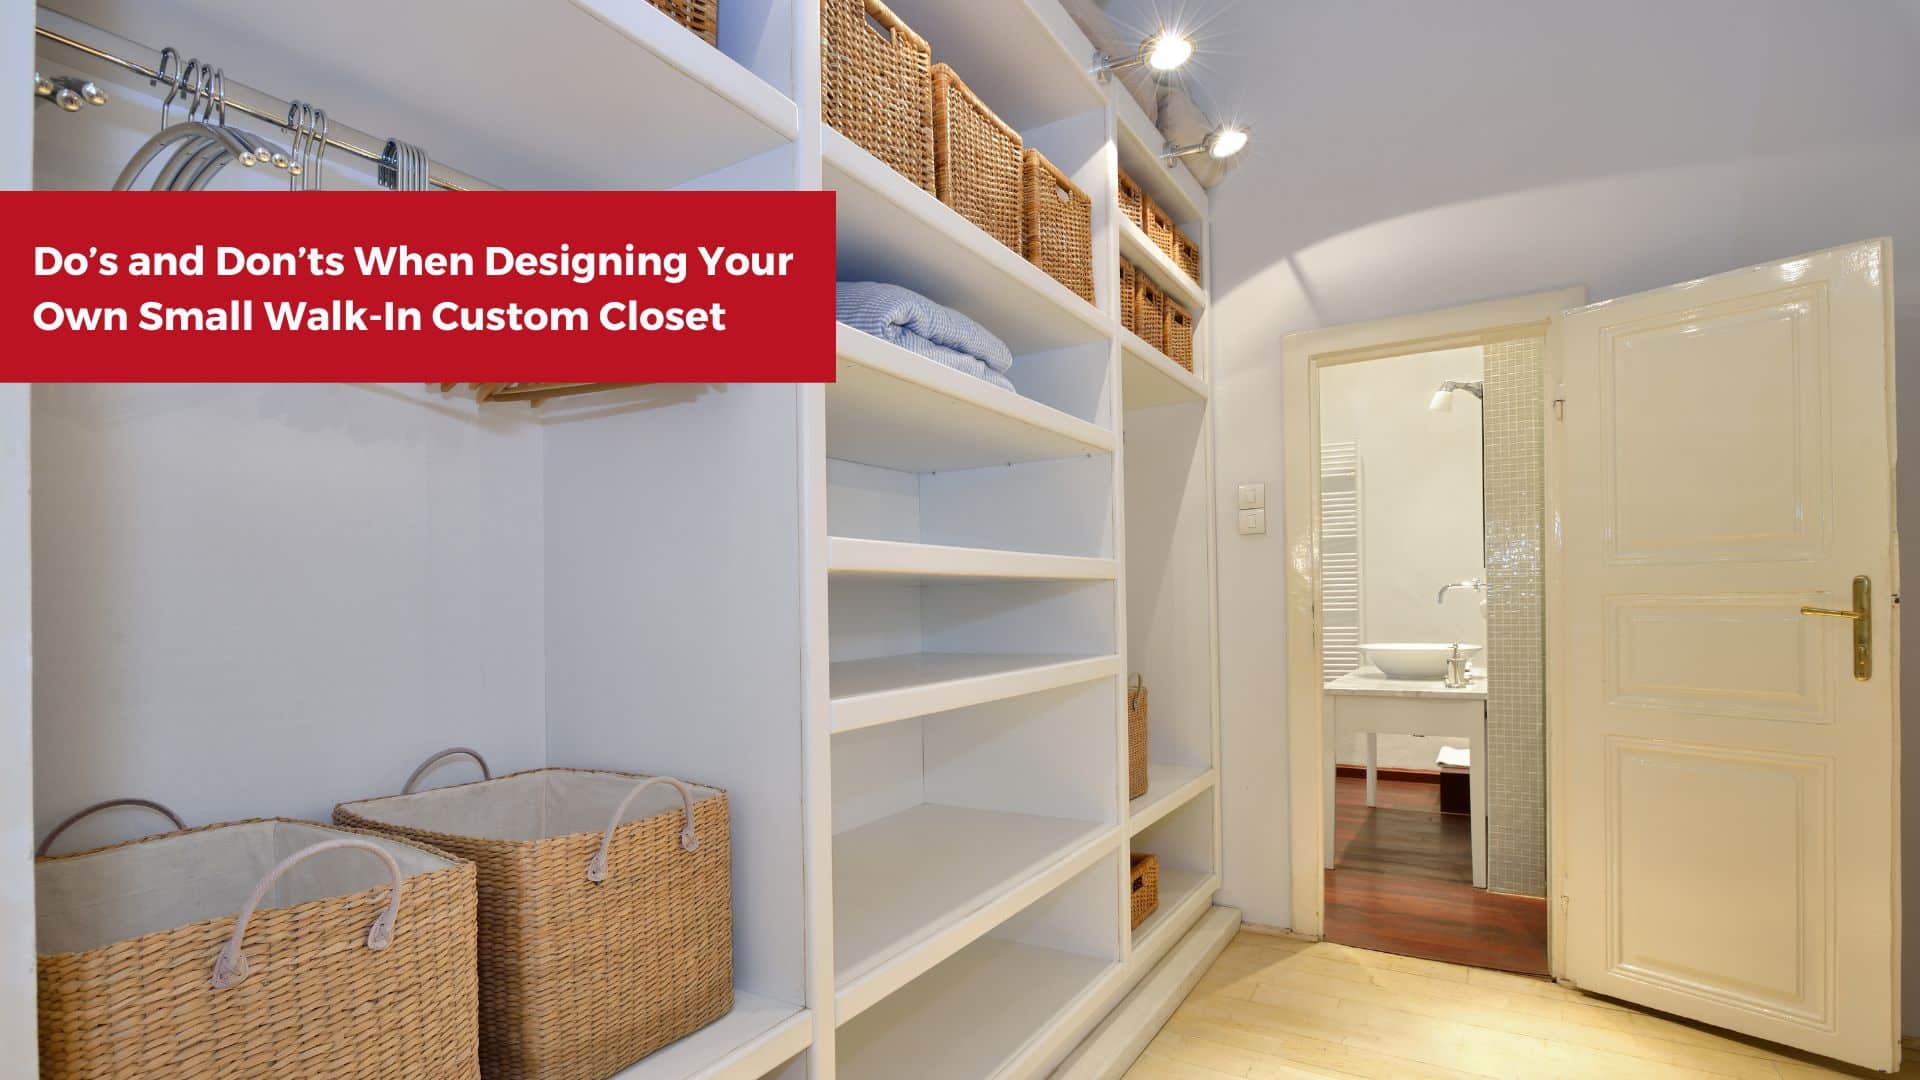 moederlijk winnen Sluier Do's and Don'ts When Designing Your Own Small Walk-In Custom Closet